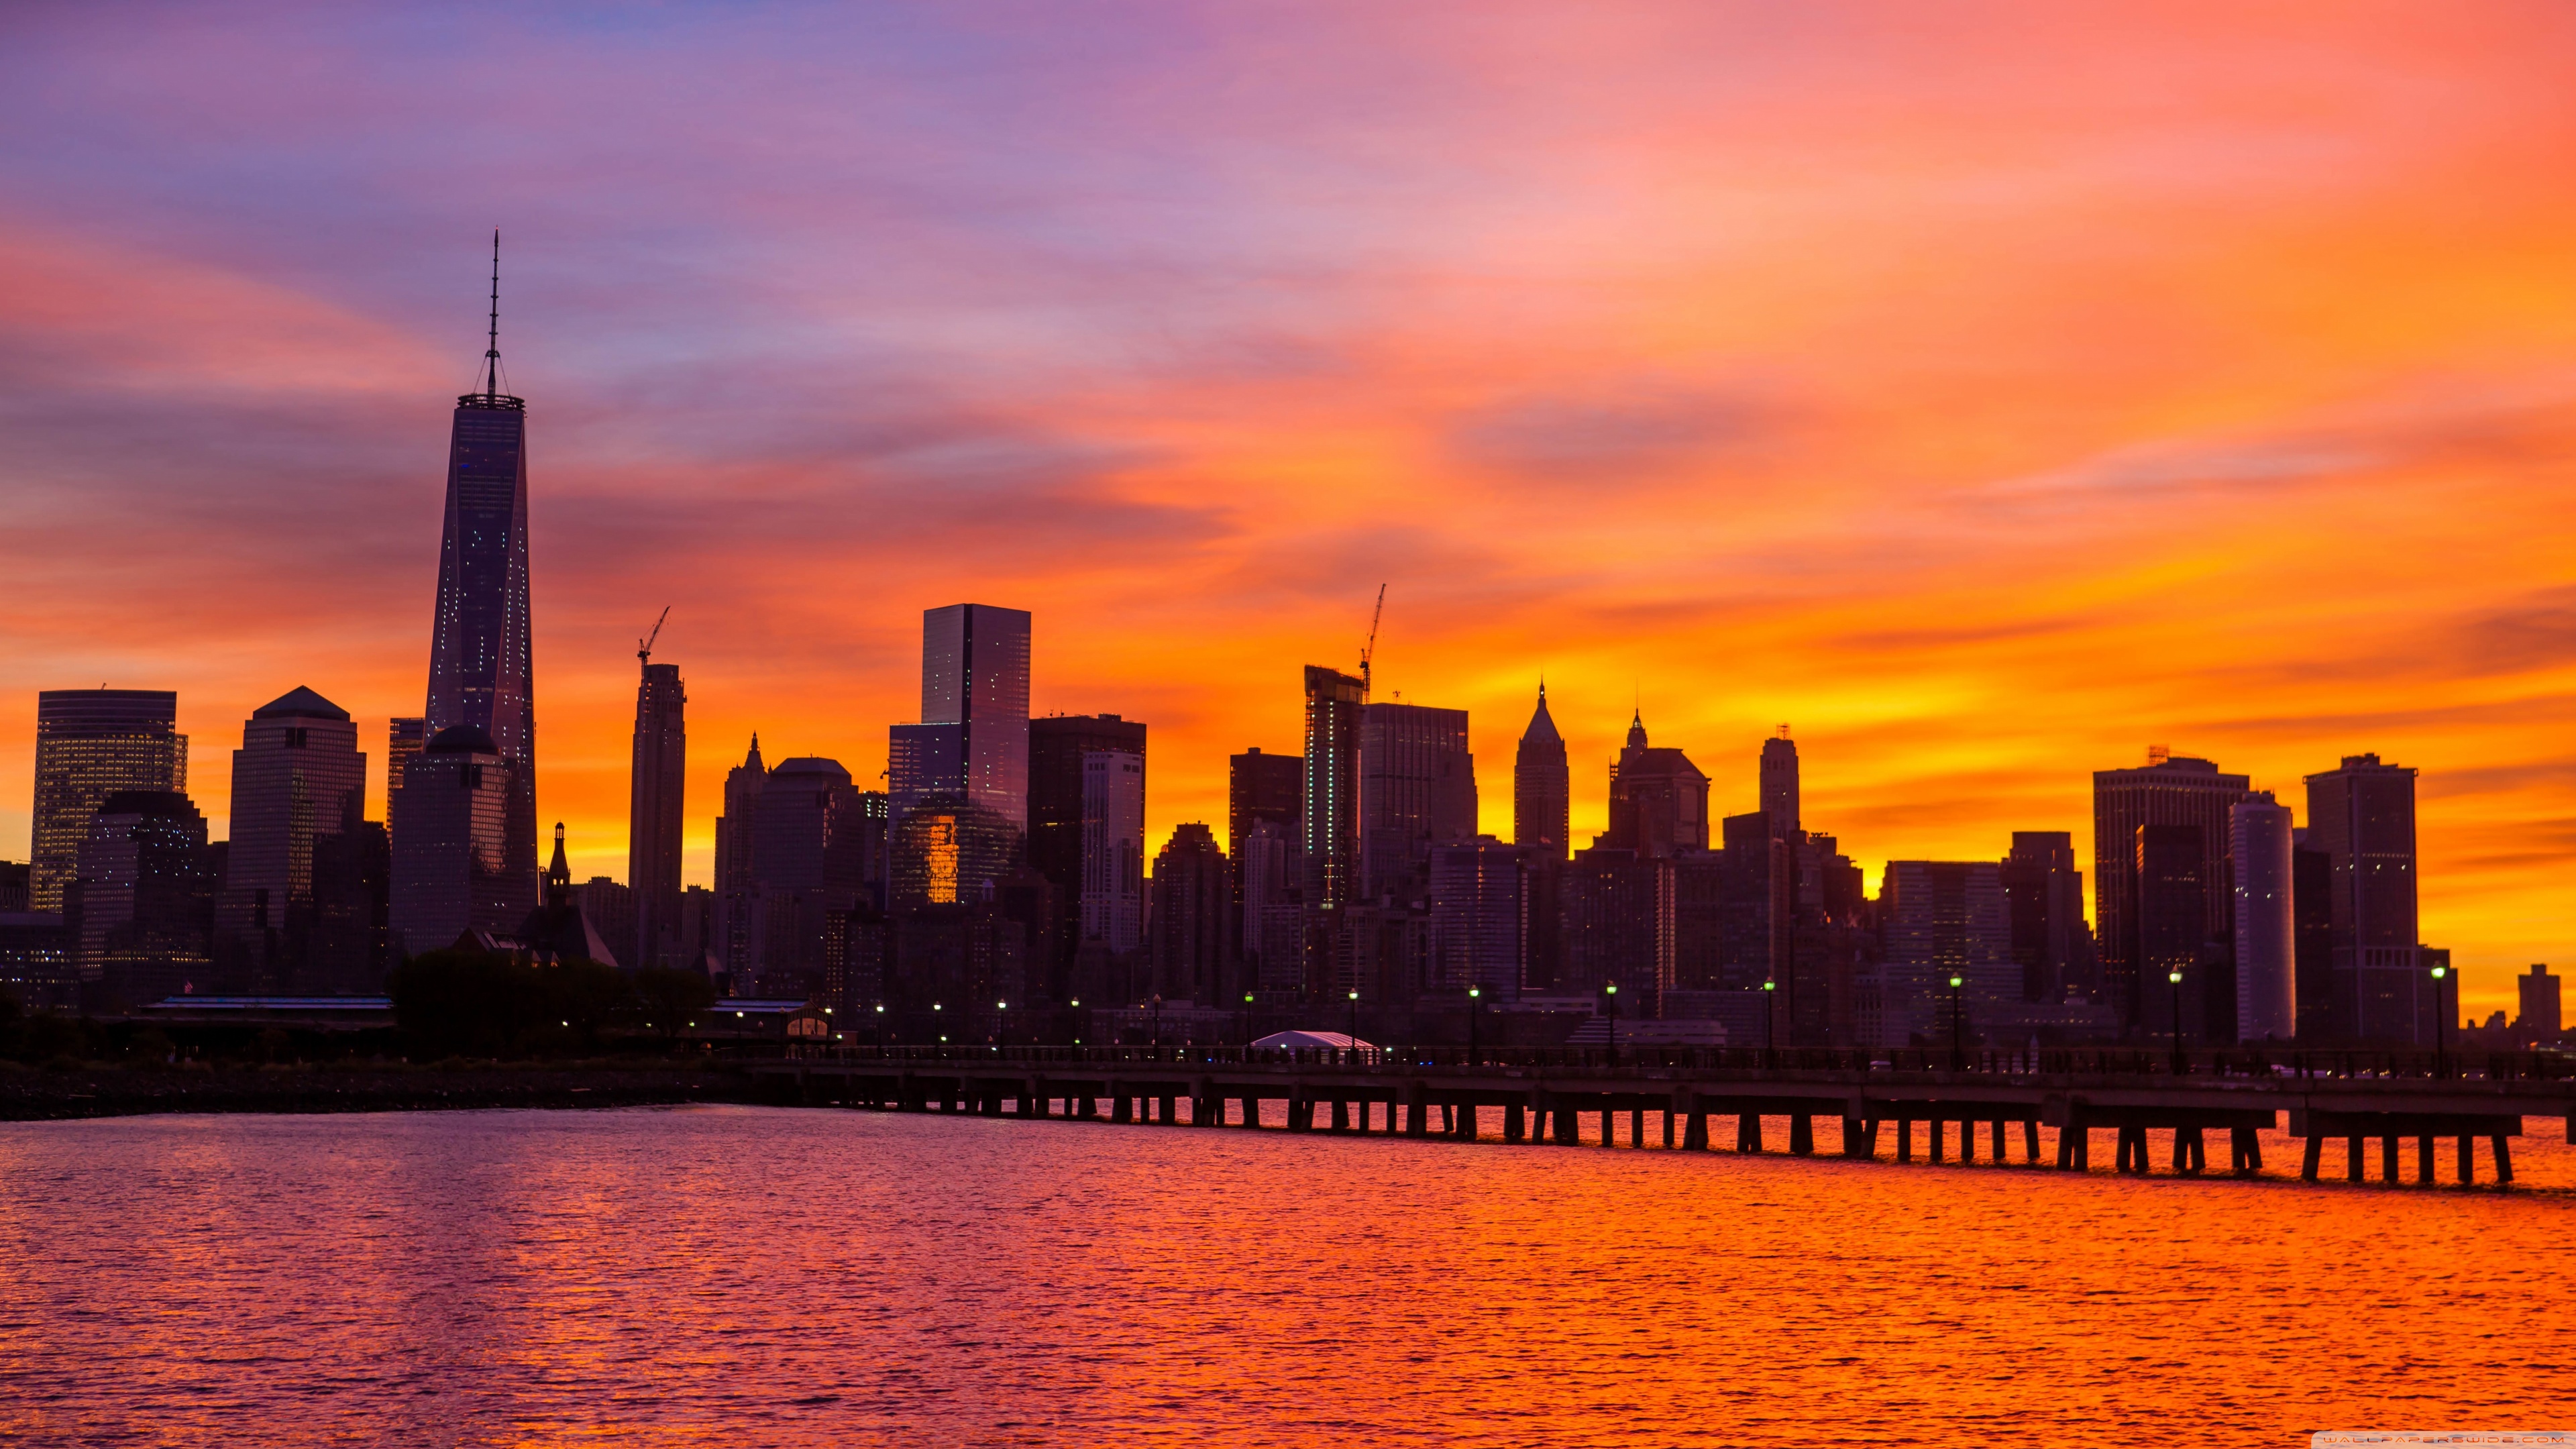 Cho phép New York City sunrise desktop wallpaper đưa bạn vào sự chào đón của một buổi sáng tuyệt vời tại thành phố này. Với ánh nắng lấp lánh trên biển cả, tòa nhà cao nhất kia, và sự yên bình của đô thị, hình ảnh này làm ngừng lại thời gian và giúp ta tìm lại sự bình yên trong tâm hồn.